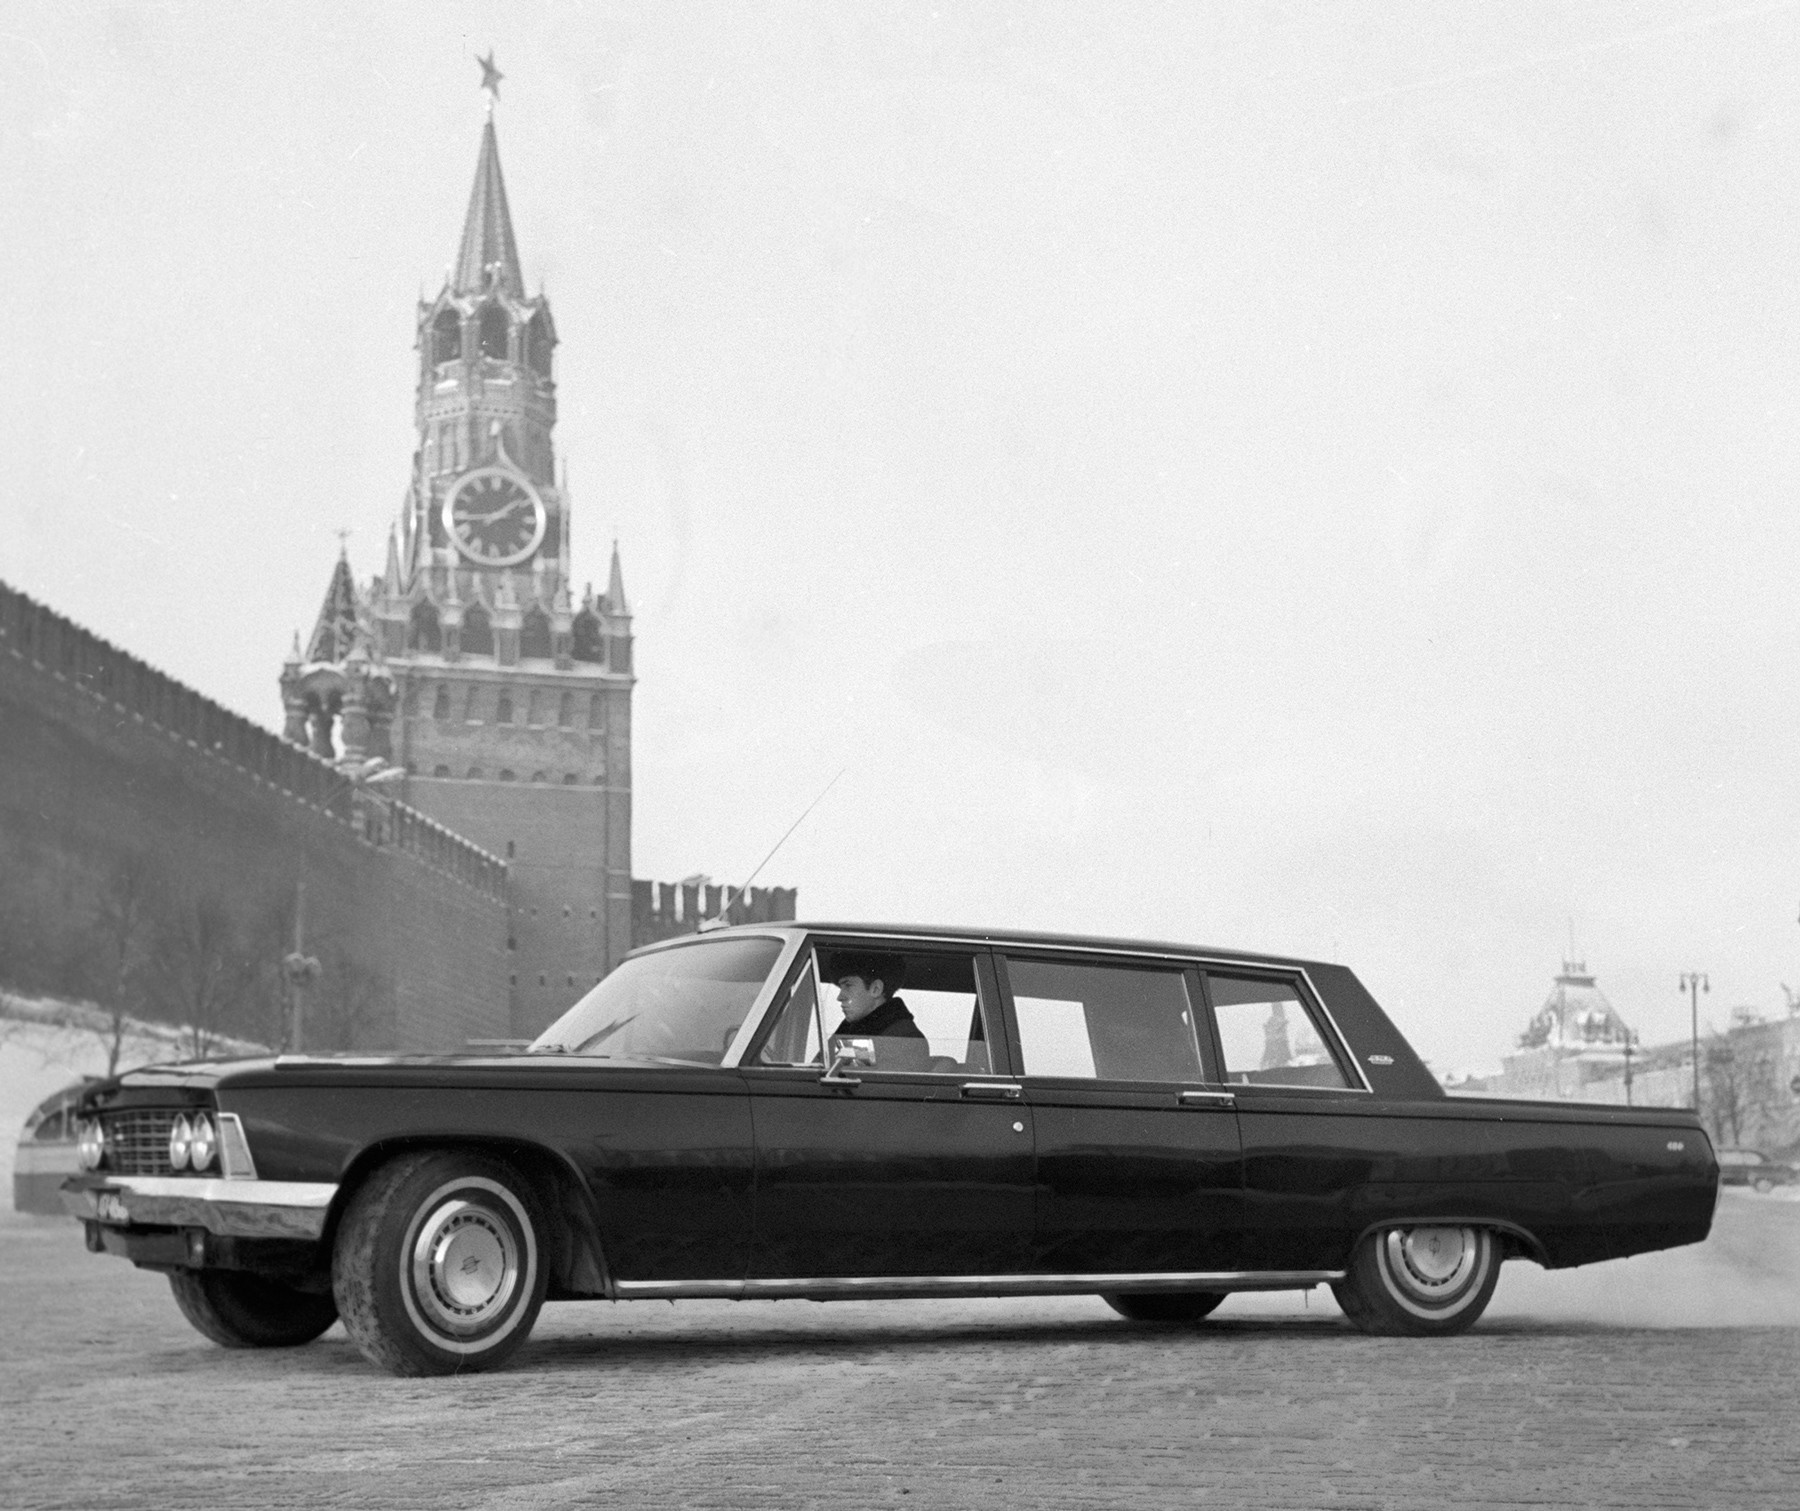 Sovjetski automobil visoke klase ZIL-114, koji se proizvodio u moskovskoj tvornici automobila 